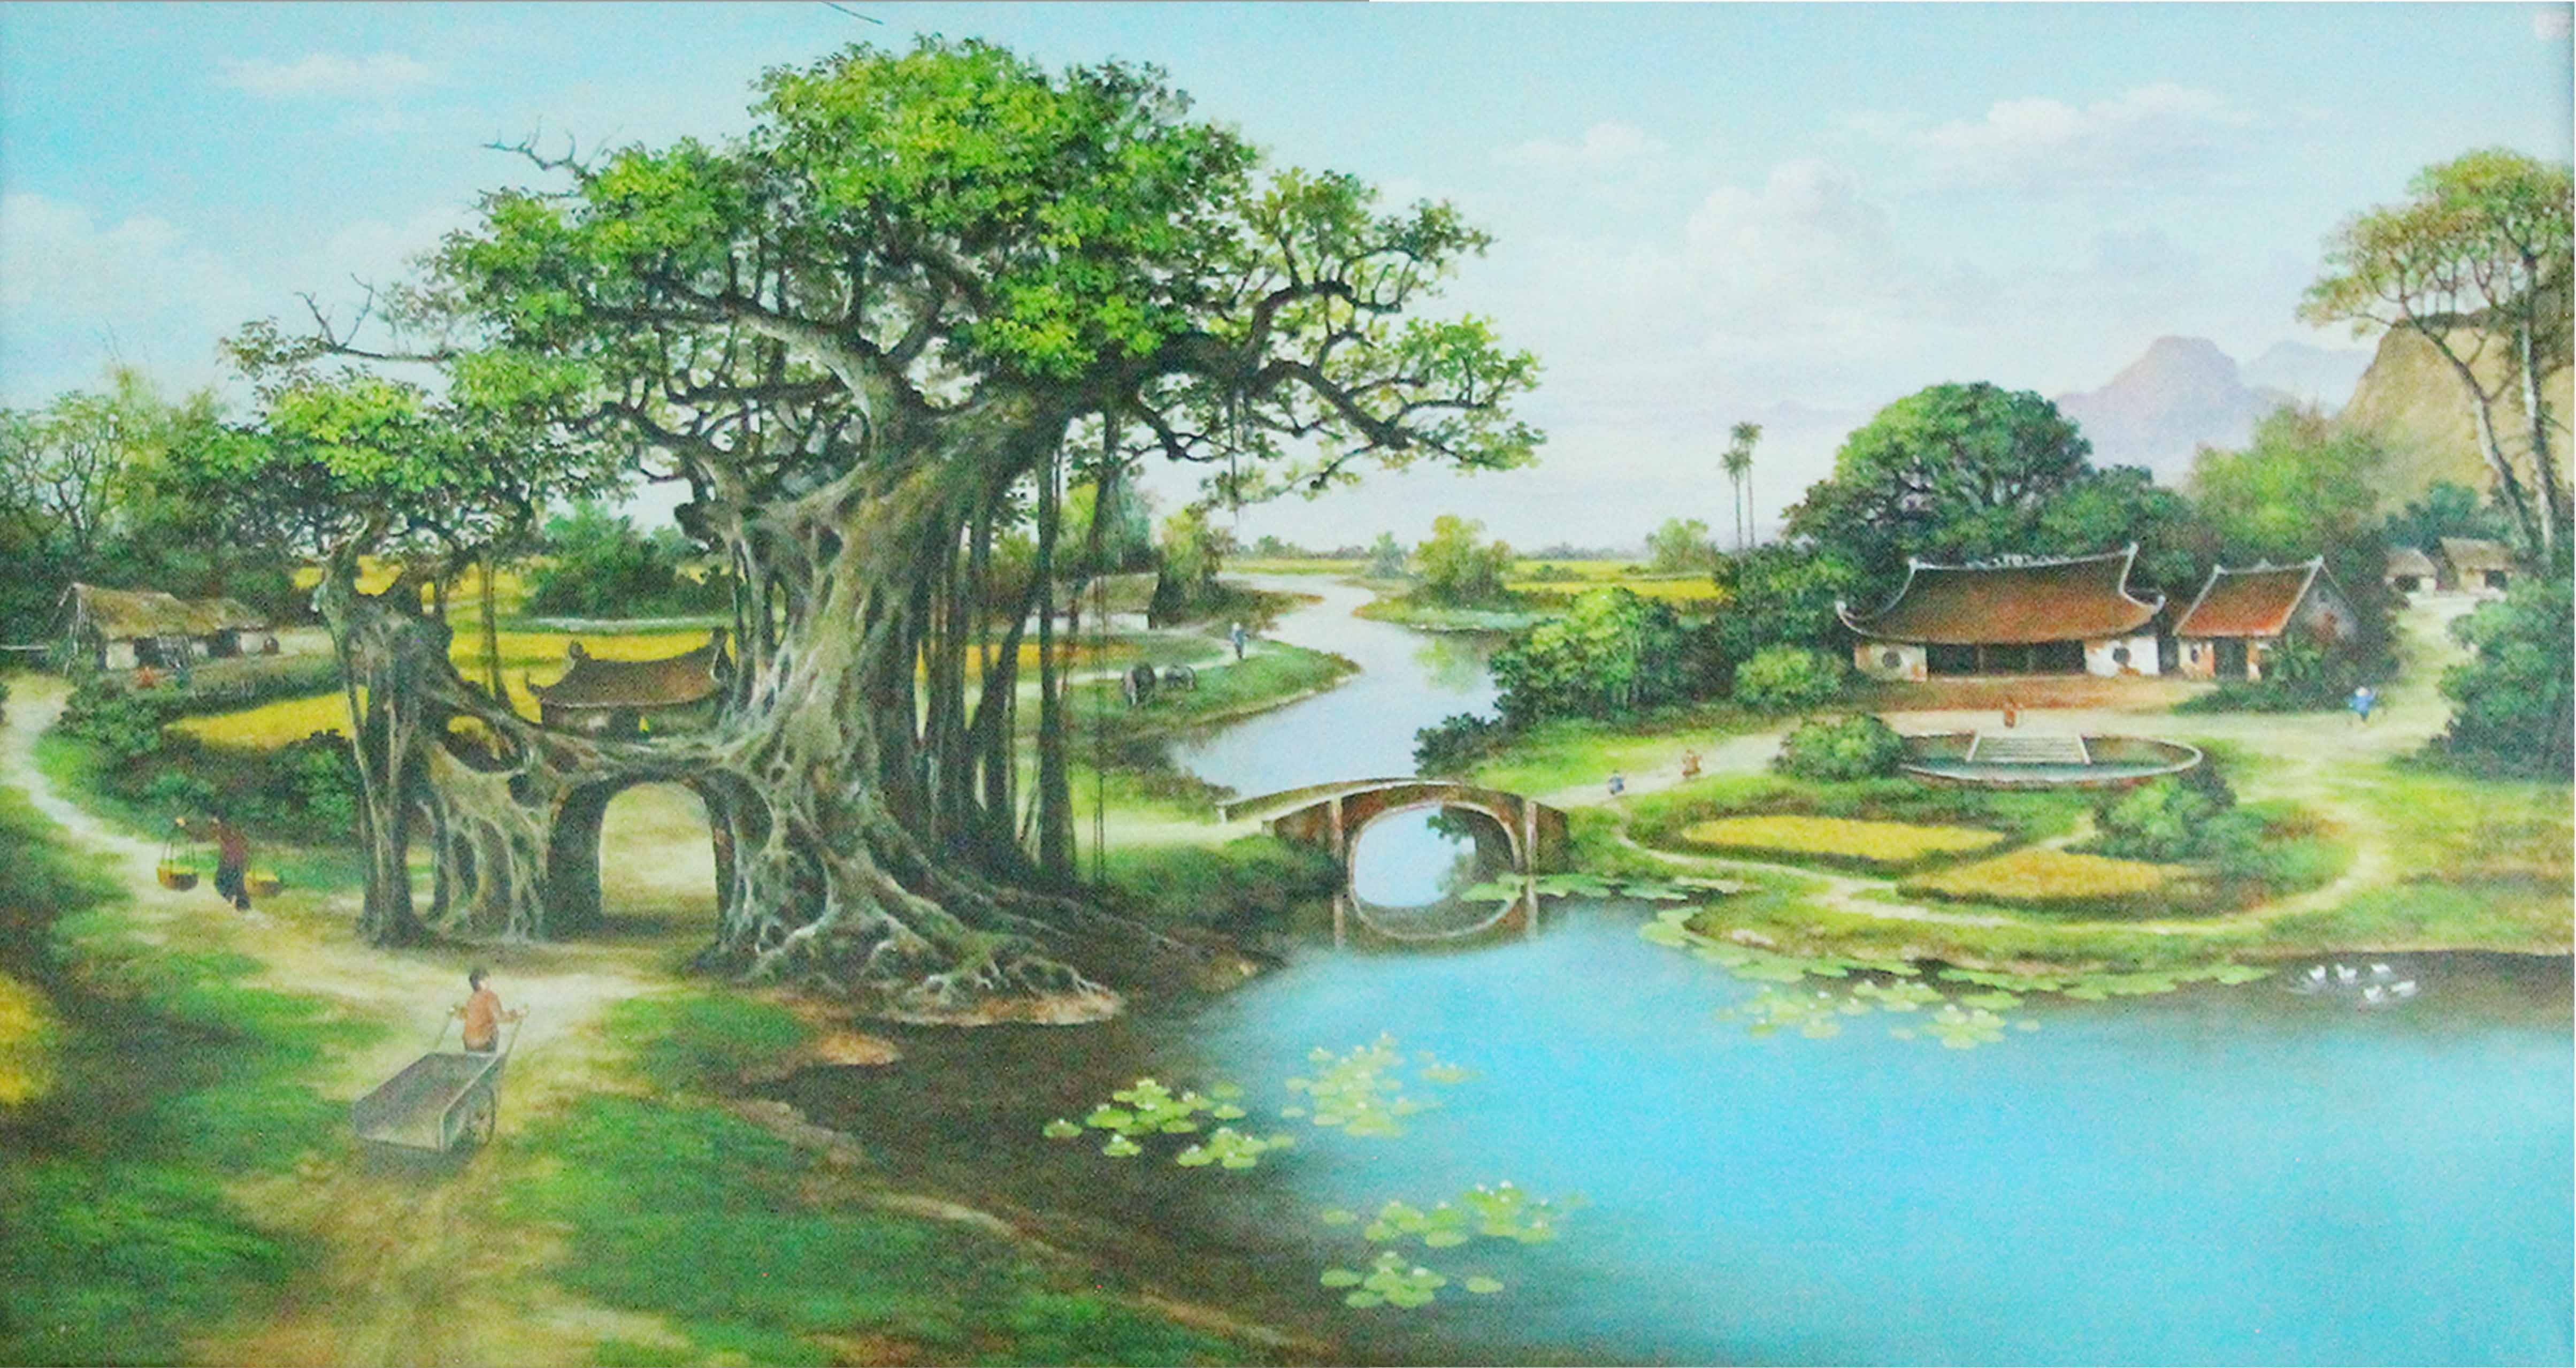 Tranh sơn dầu phong cảnh cánh đồng thôn quê Việt Nam - TSD69LHAR